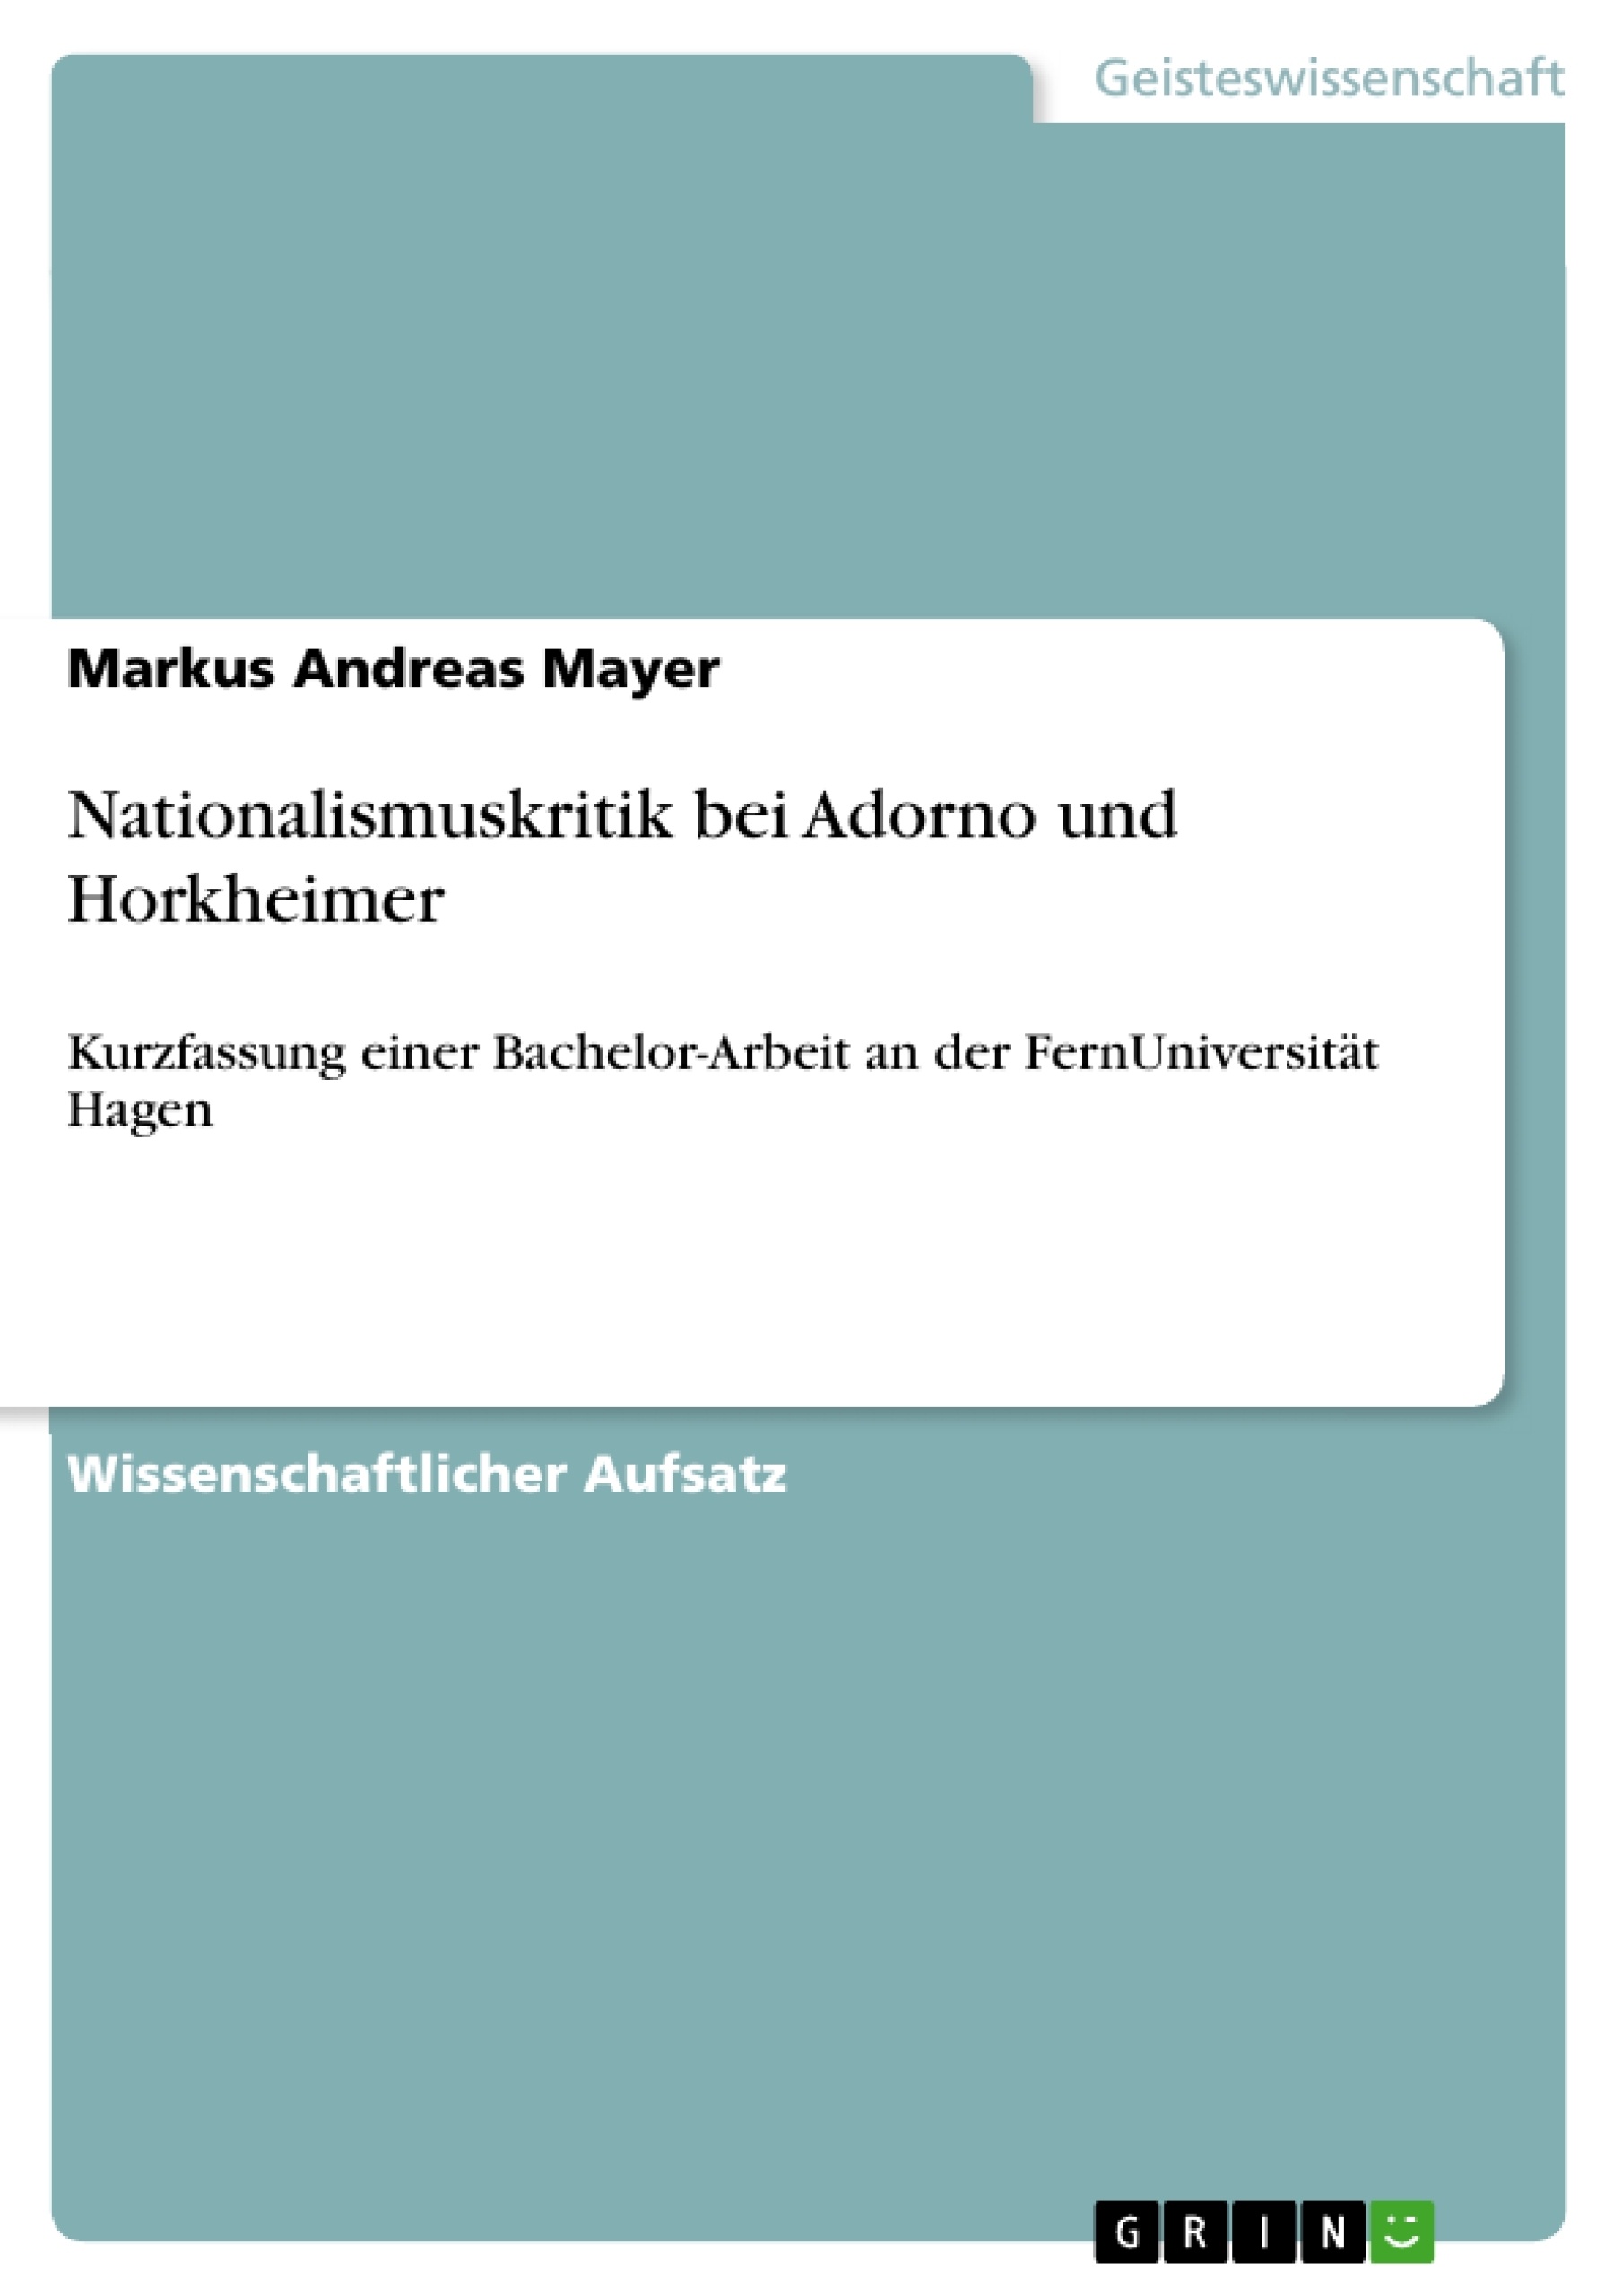 Title: Nationalismuskritik bei Adorno und Horkheimer